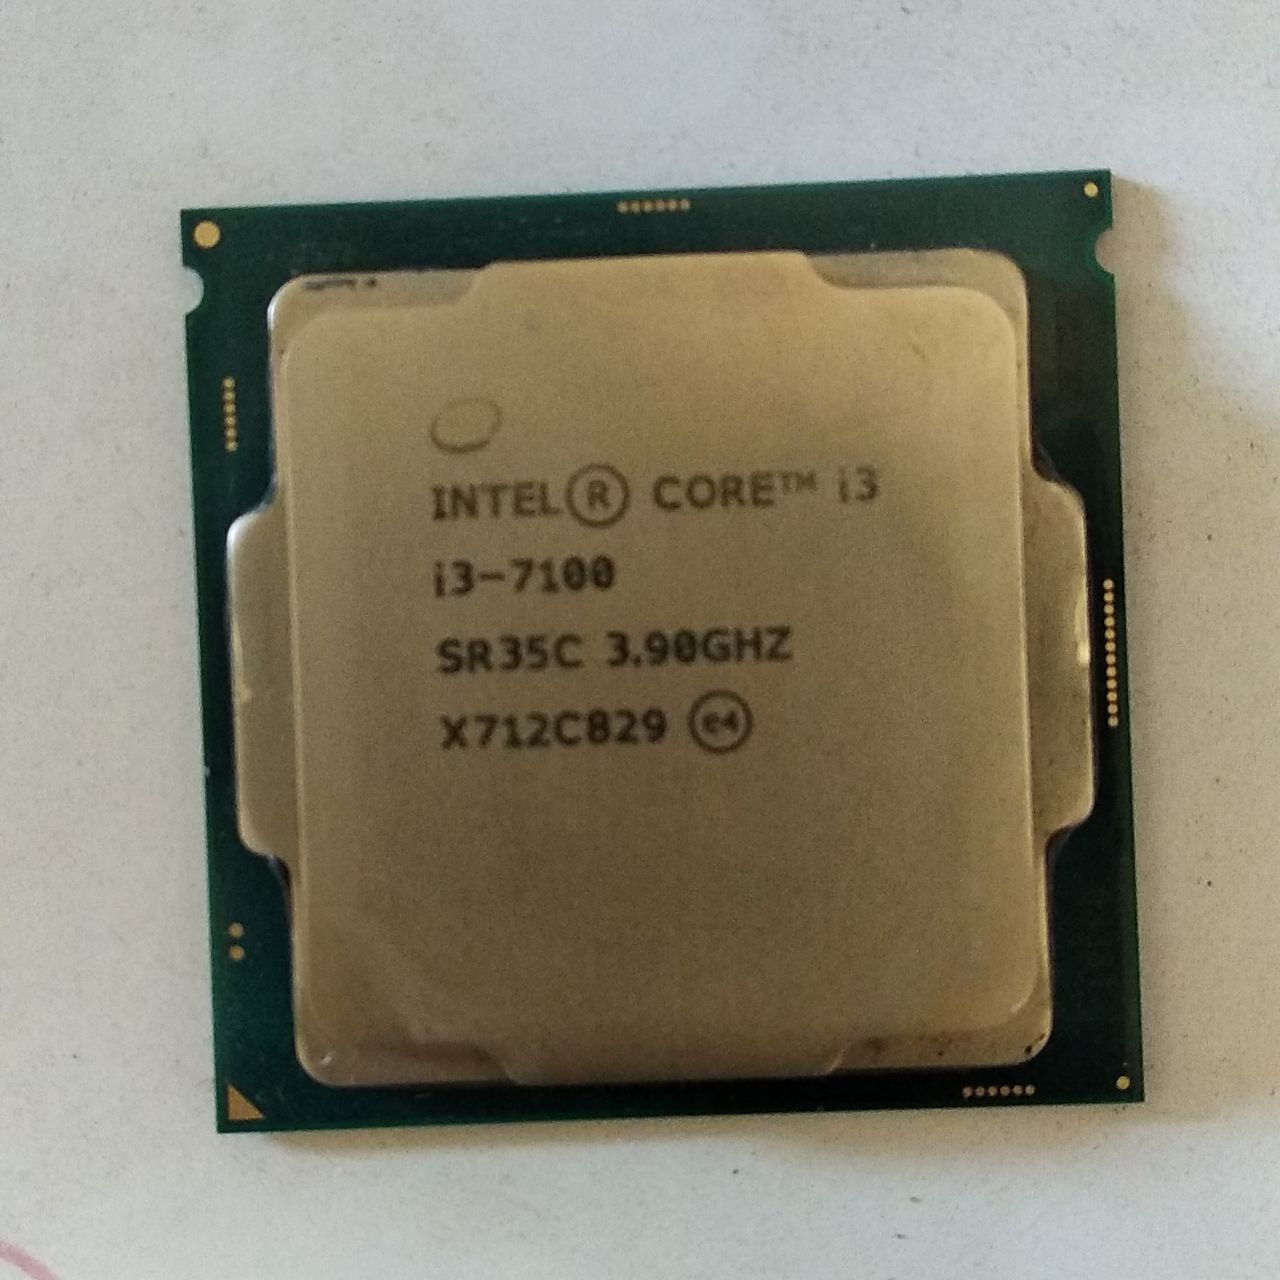 Intel Core i3-7100T SR35P 2C 3.4GHz 3MB 35W LGA1151 BX80677I37100T 